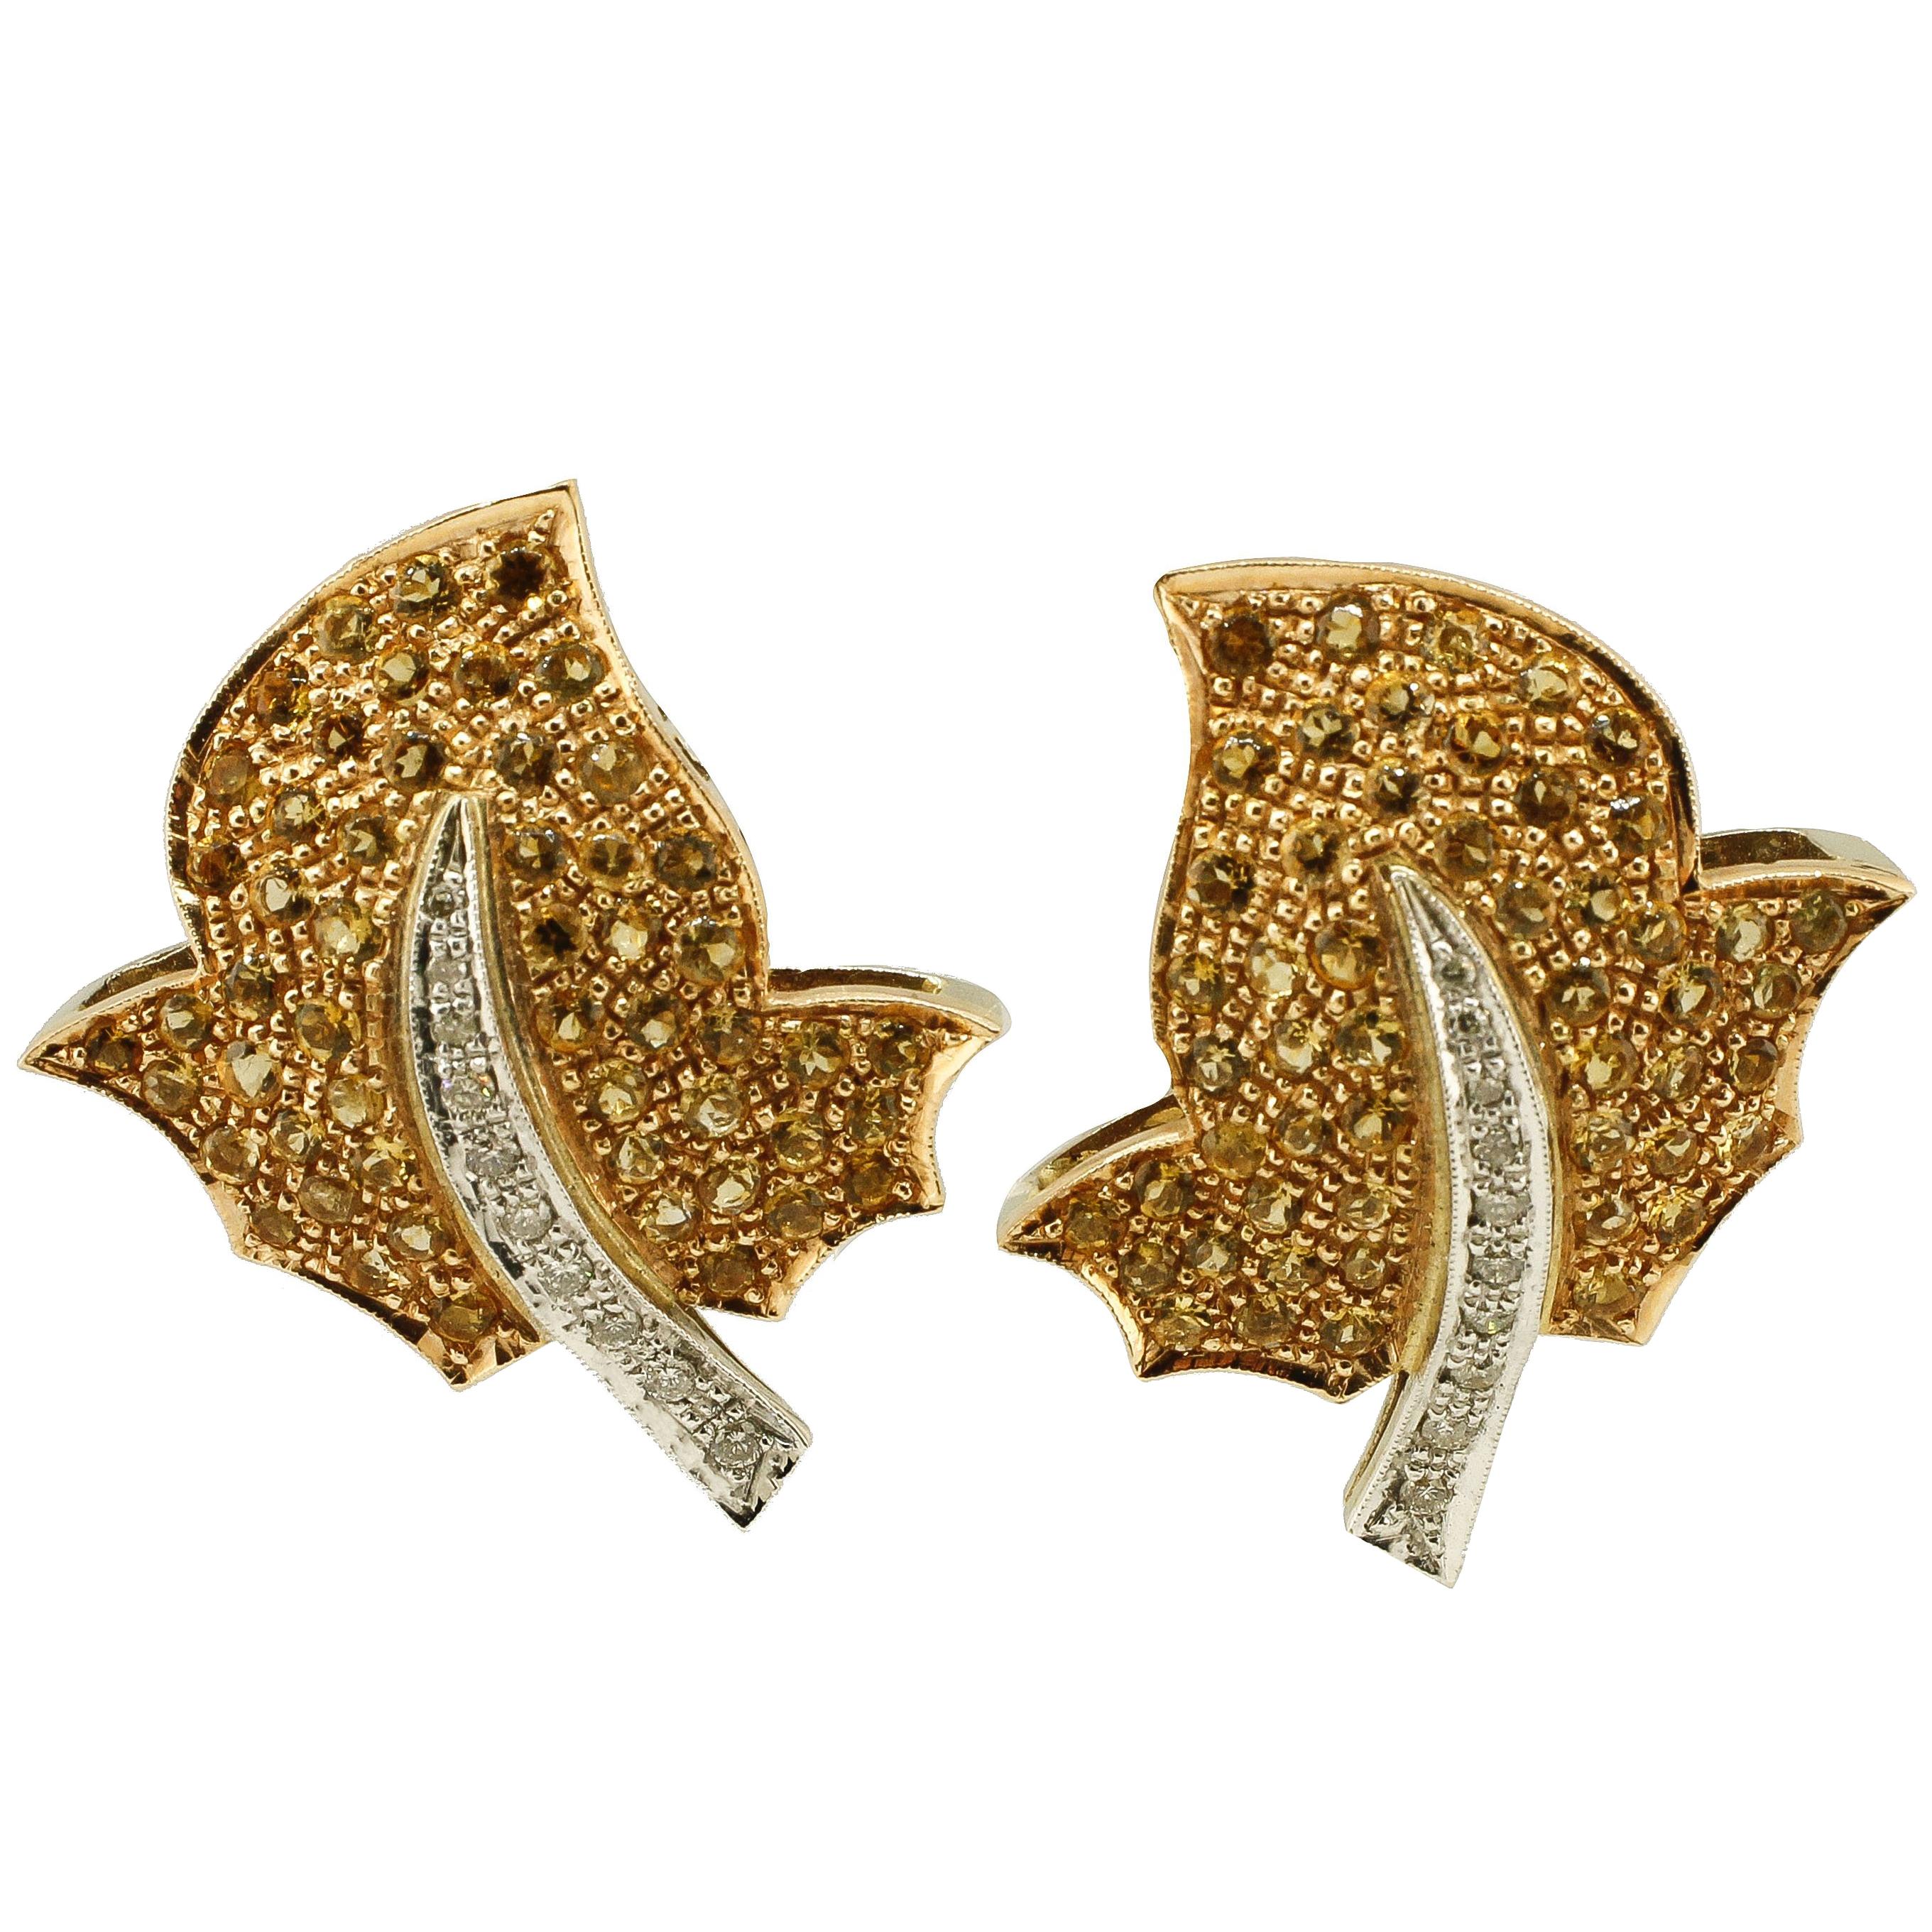  Topaz Diamond Gold Earrings For Sale